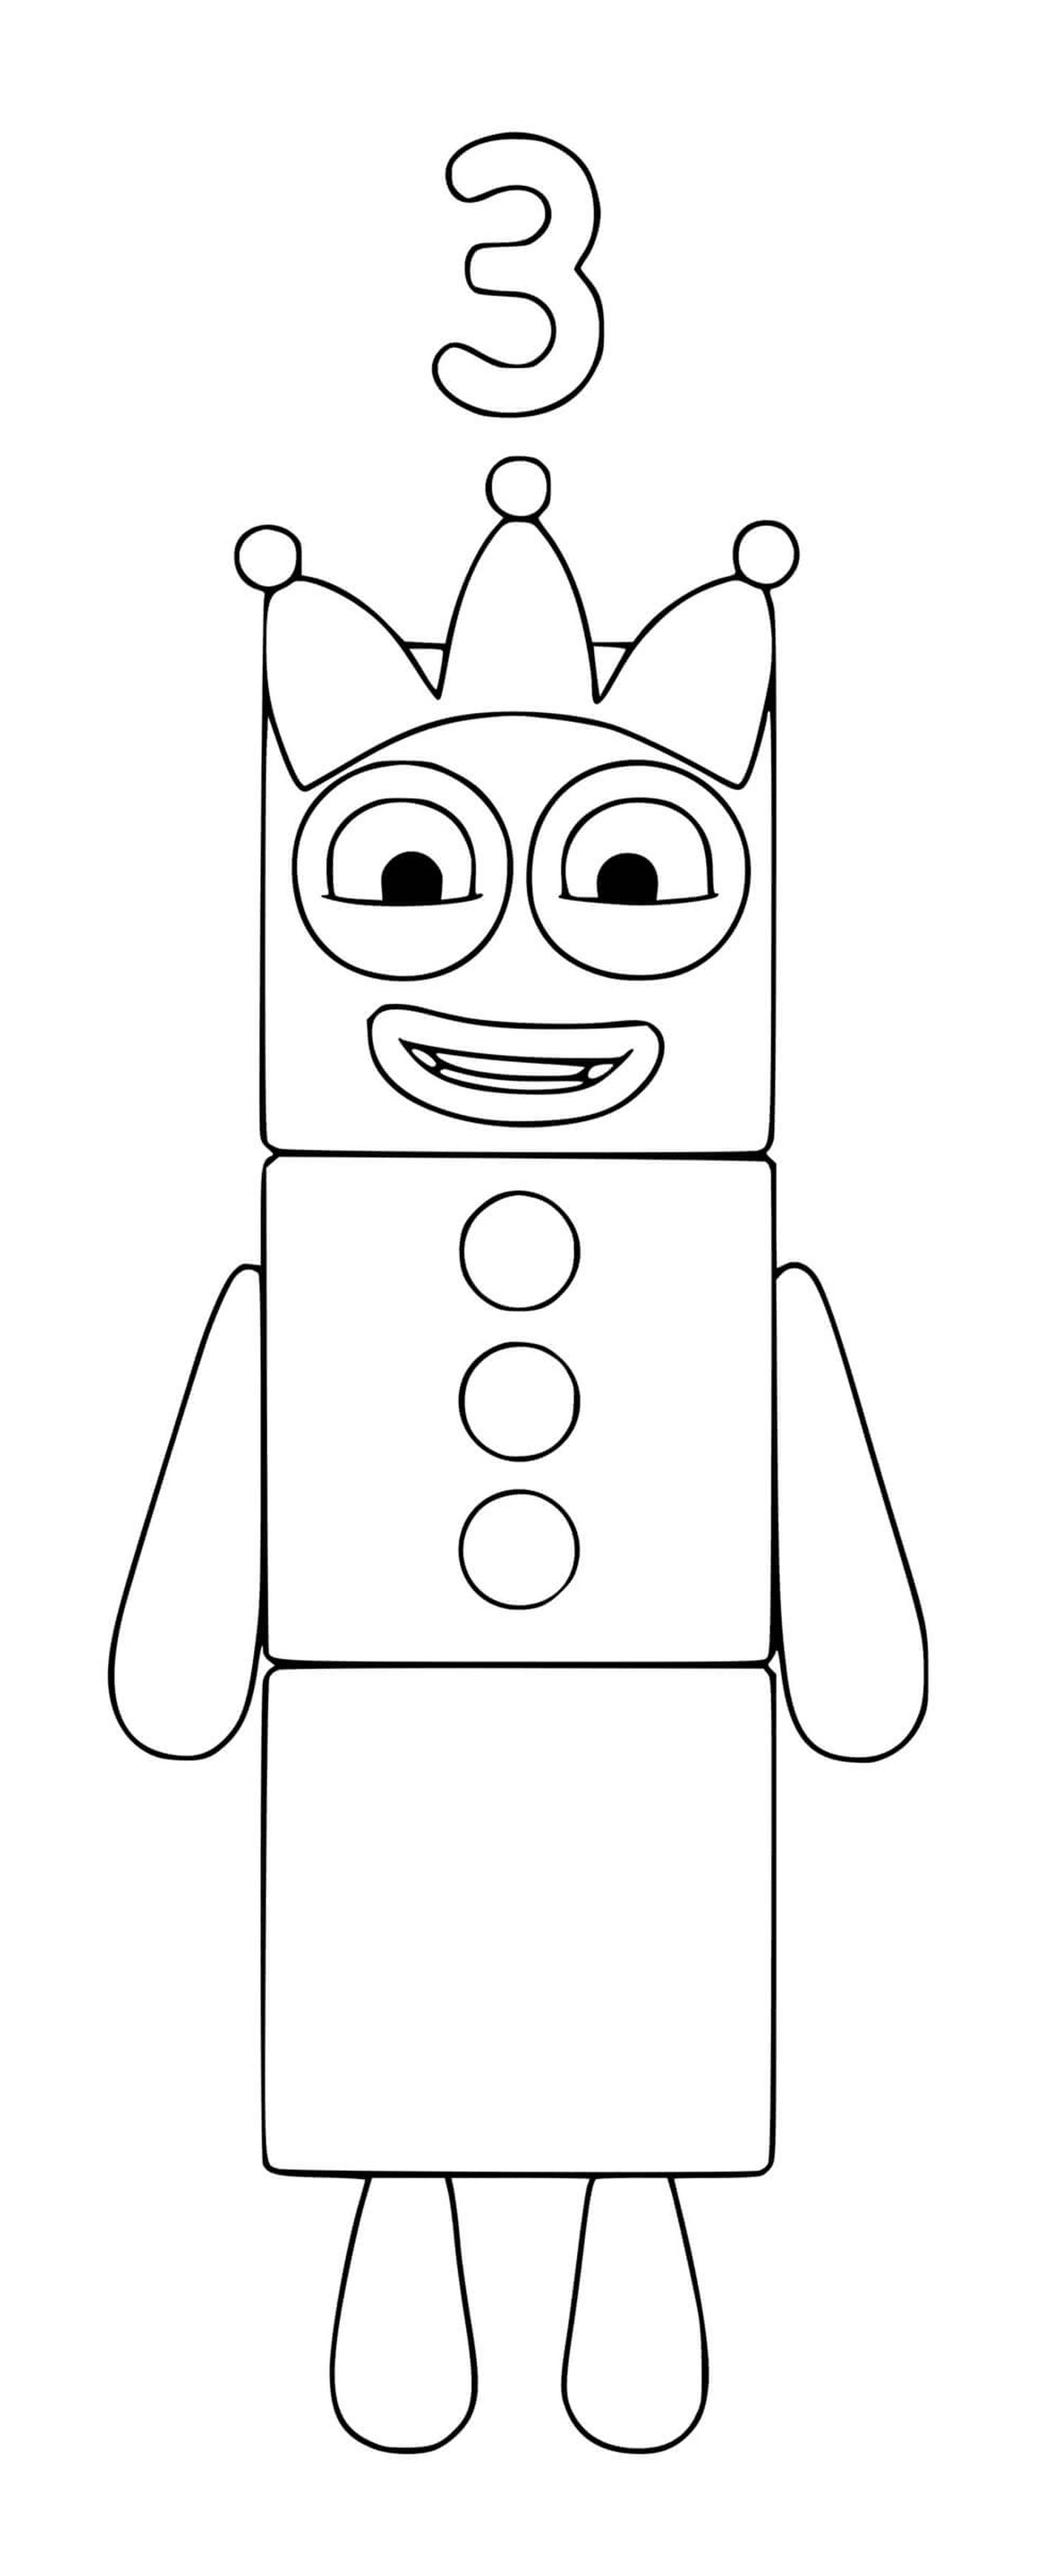  Numberblocks número 3, un robot de juguete 